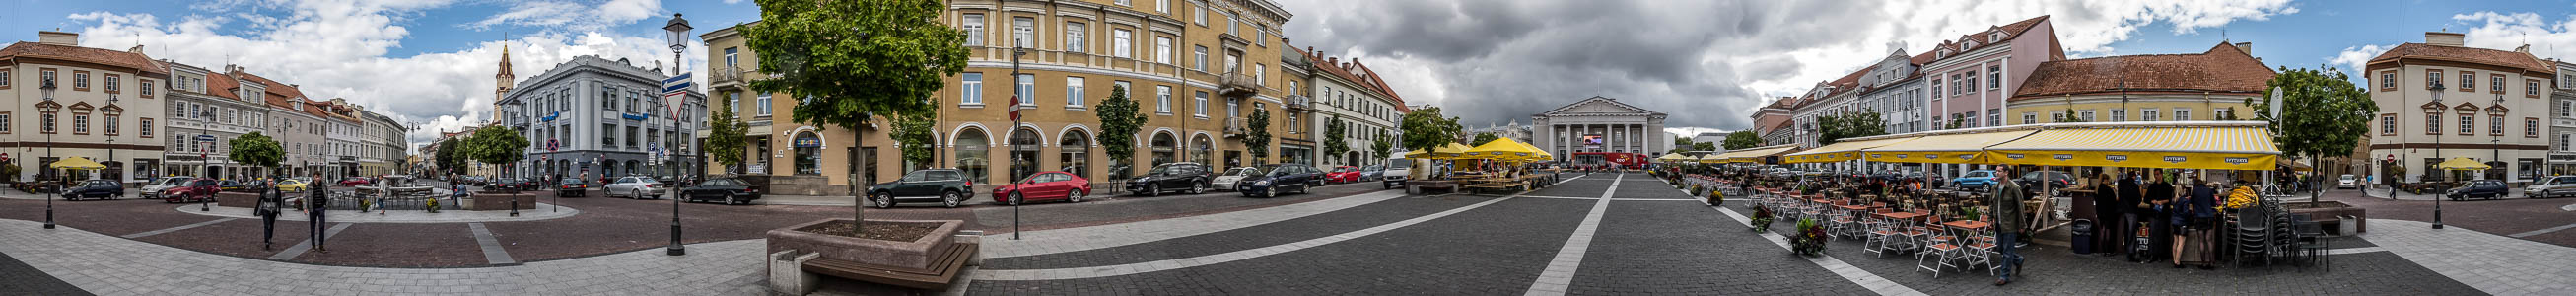 Altstadt: Rathausplatz Vilnius